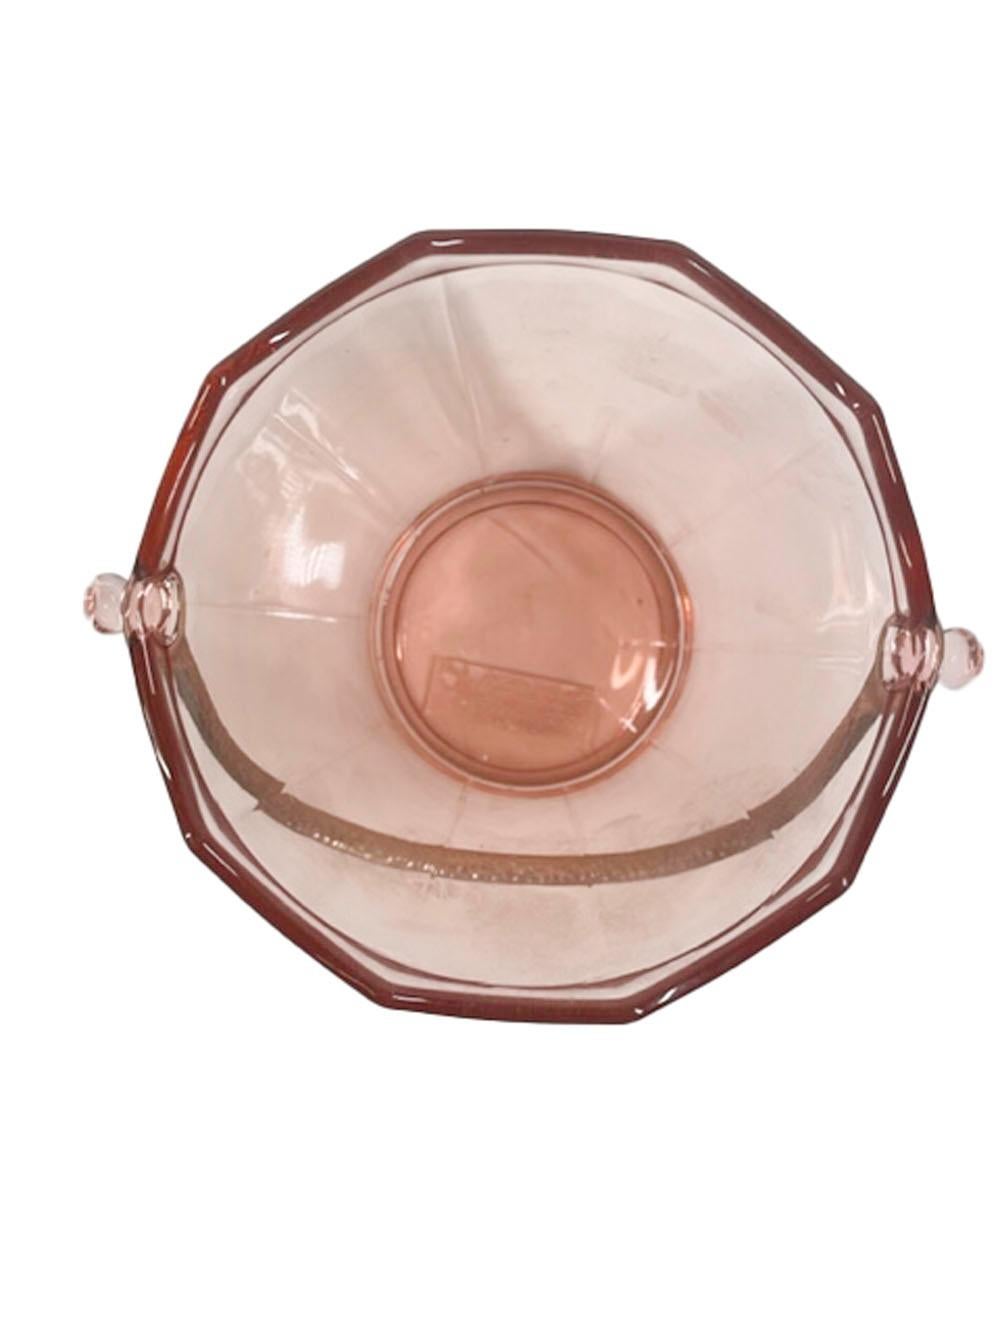 Seau à glace en verre rose pâle en forme de seau avec anse martelée par Cambridge Glass Company dans le motif 'Elegant Glass'. Le seau est doté d'un bord festonné au-dessus de côtés effilés divisés en dix panneaux. Marqué d'un 